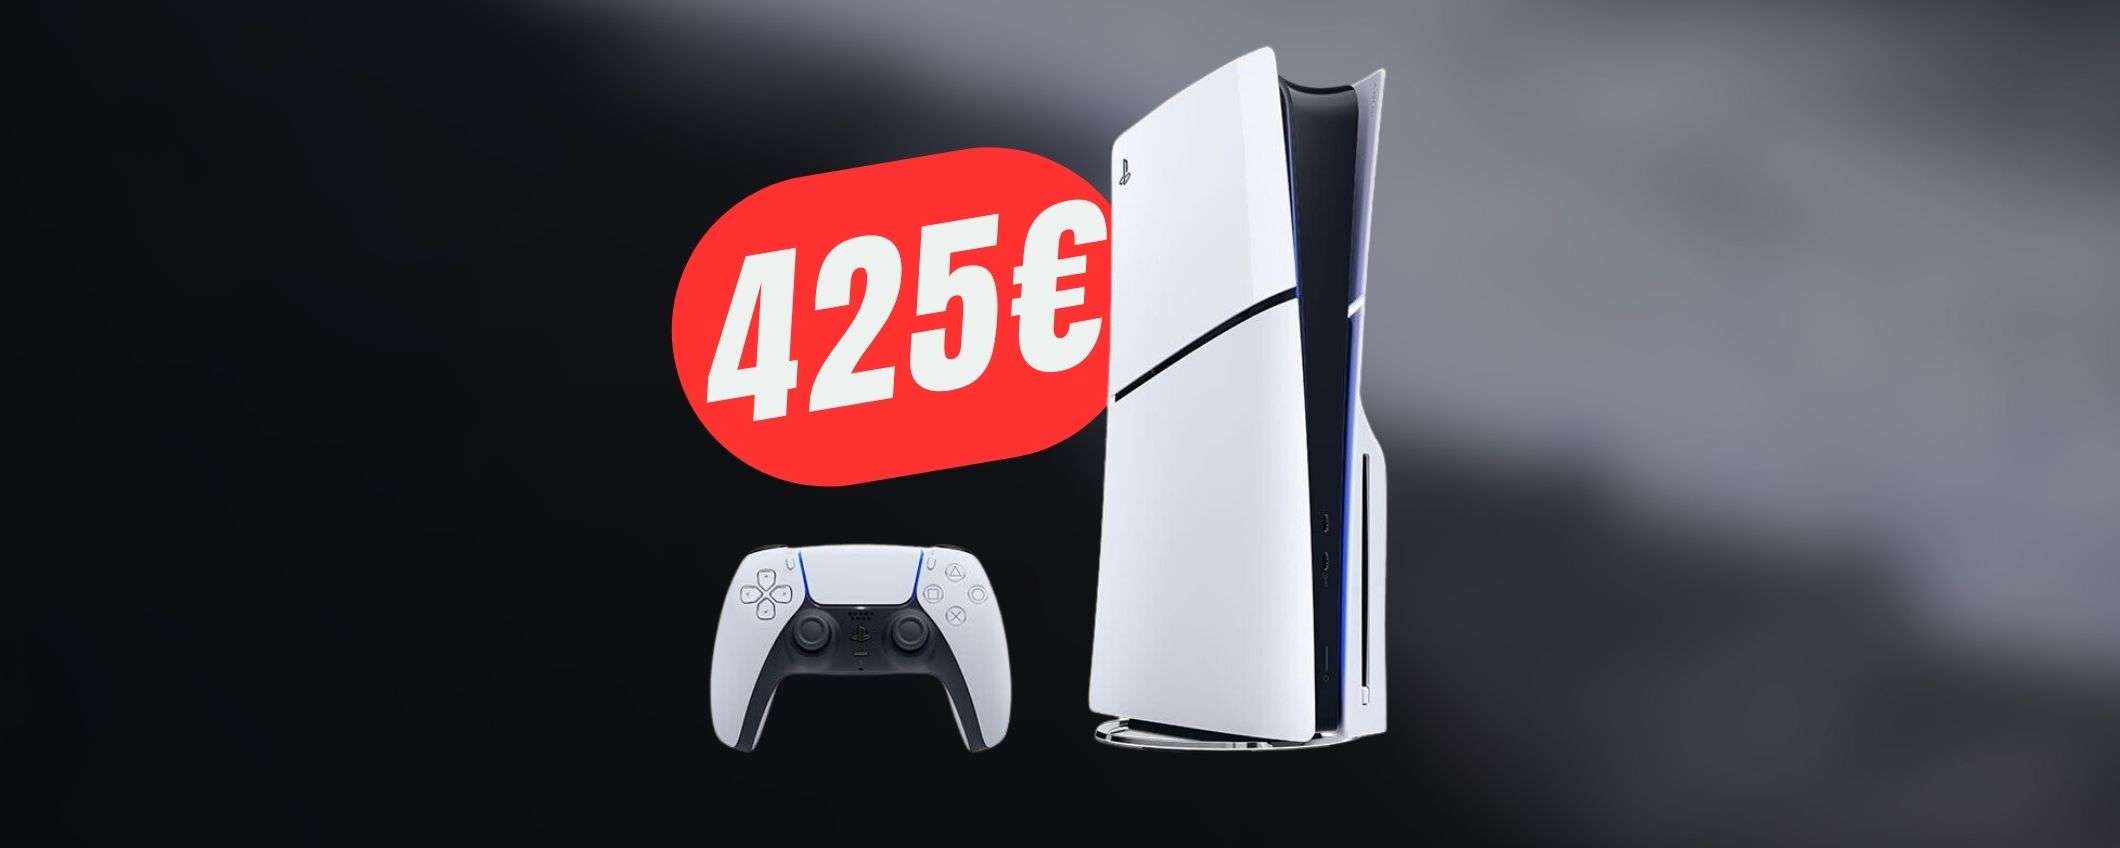 PlayStation 5 Slim a 425€ è un sogno che si avvera grazie a questo COUPON